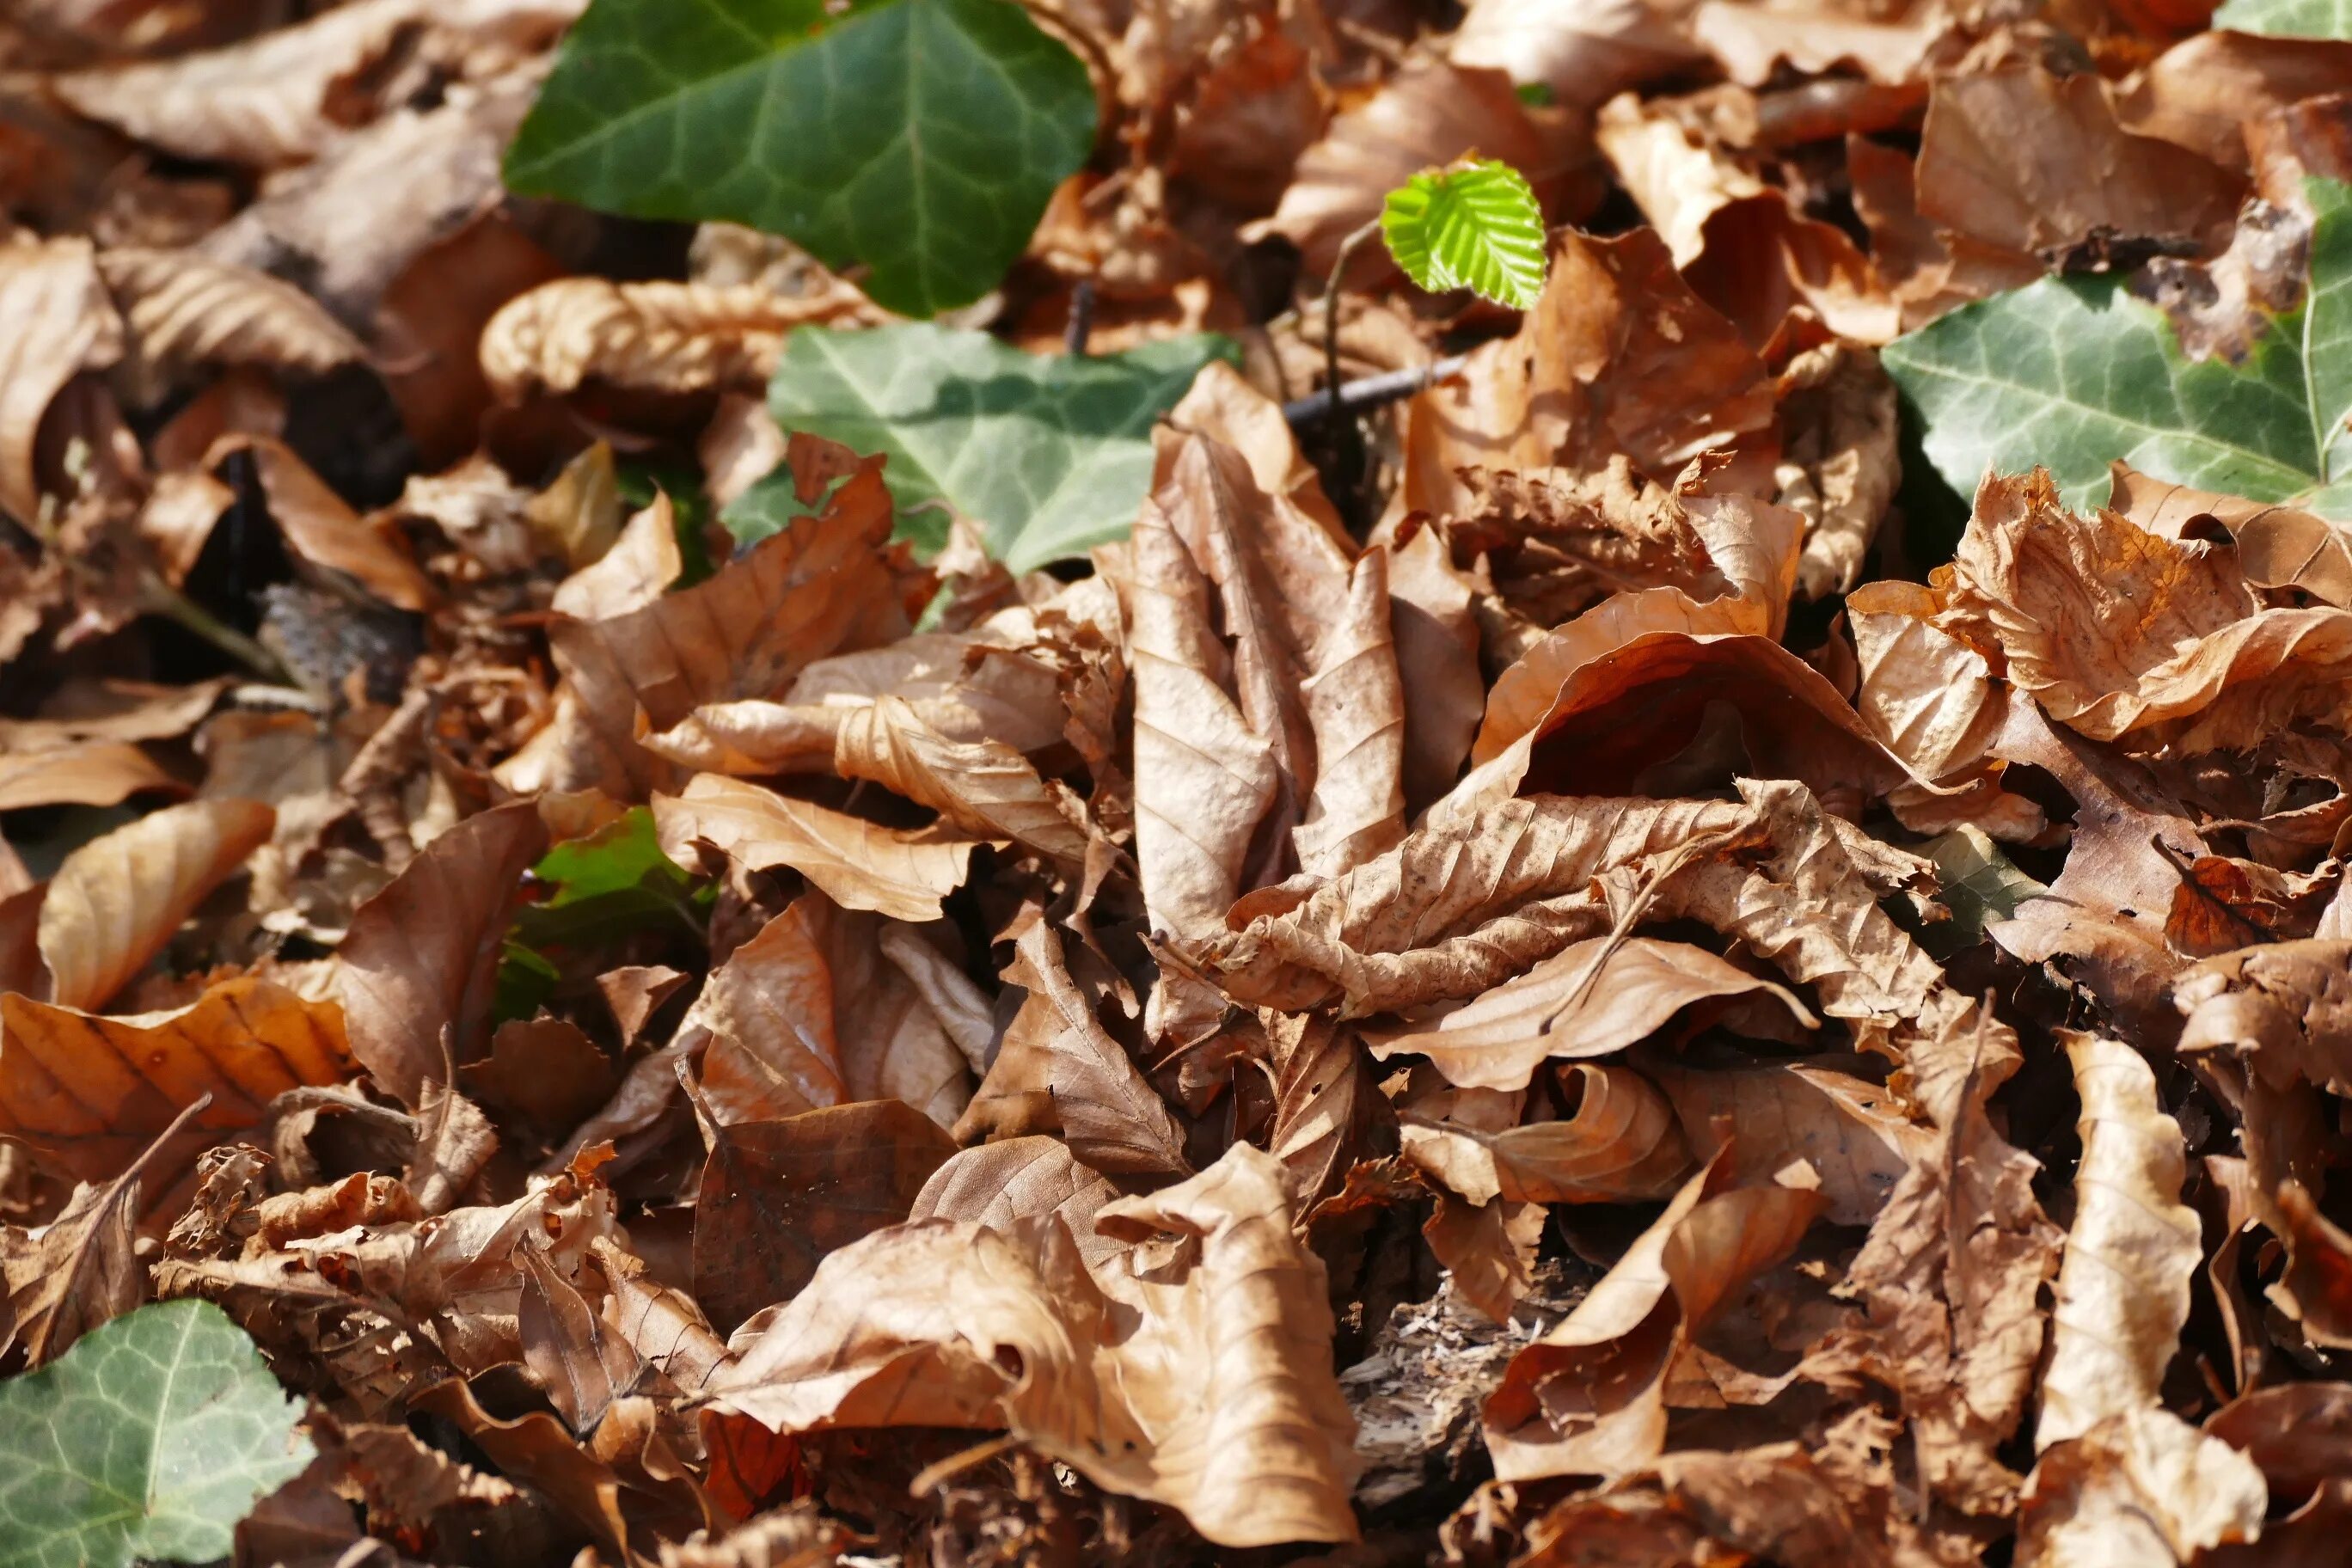 Brown фото. Коричневые листья. Бурые листья. Коричневый цвет в природе. Дерево с коричневыми листьями.